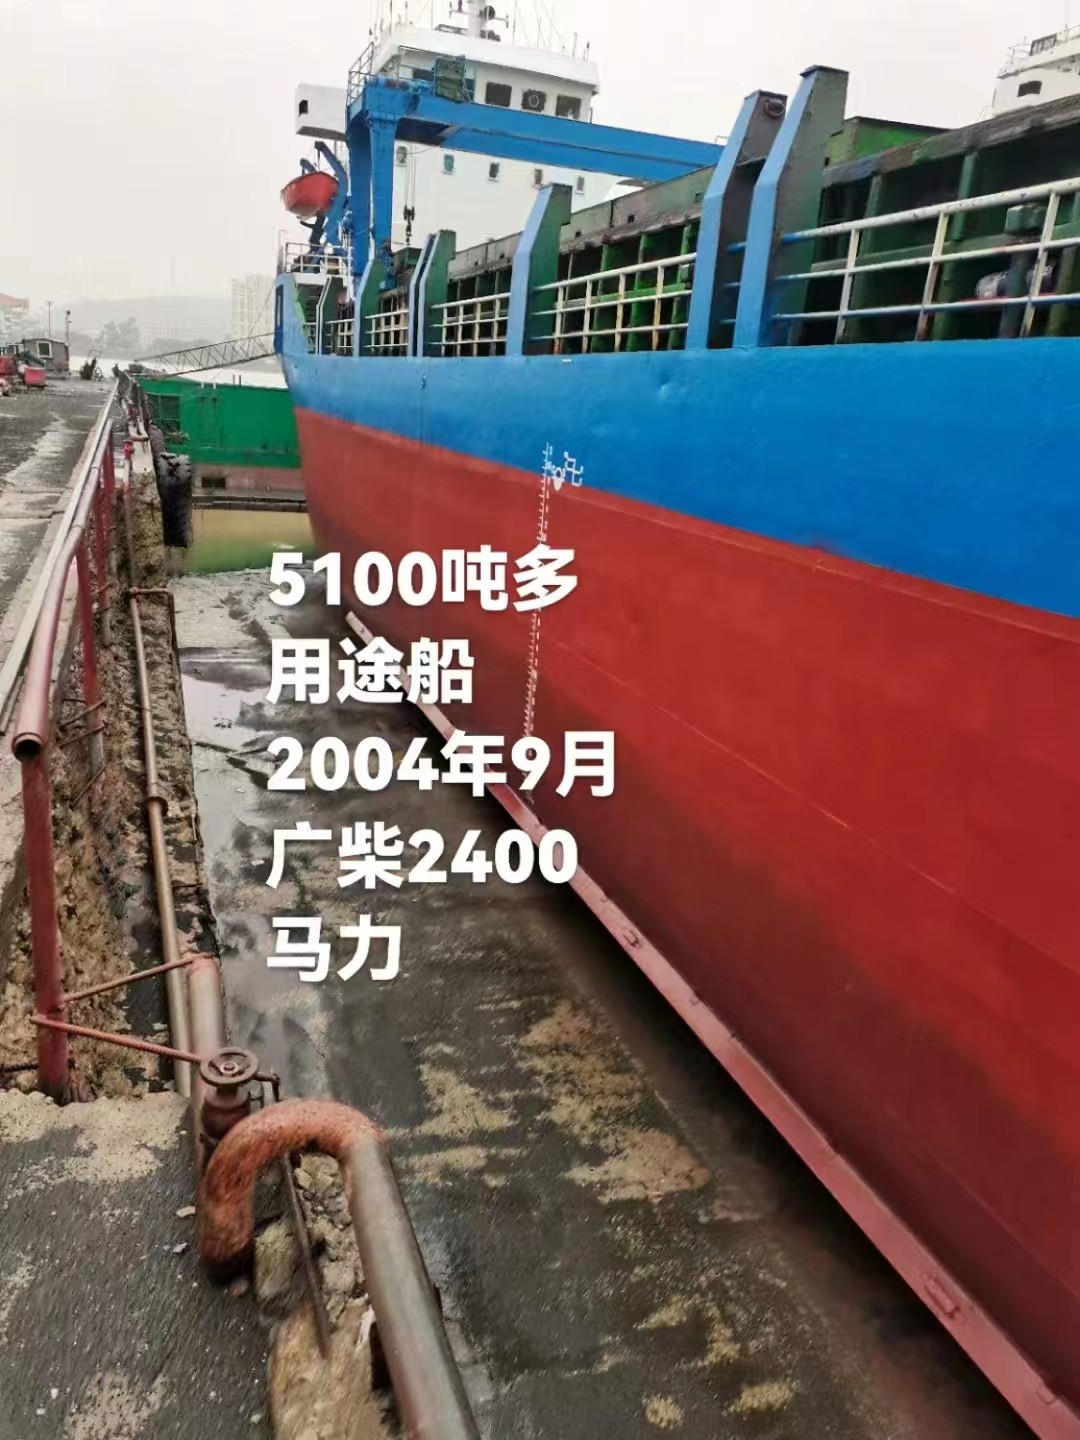 出售编号636 04年5100吨多用途船